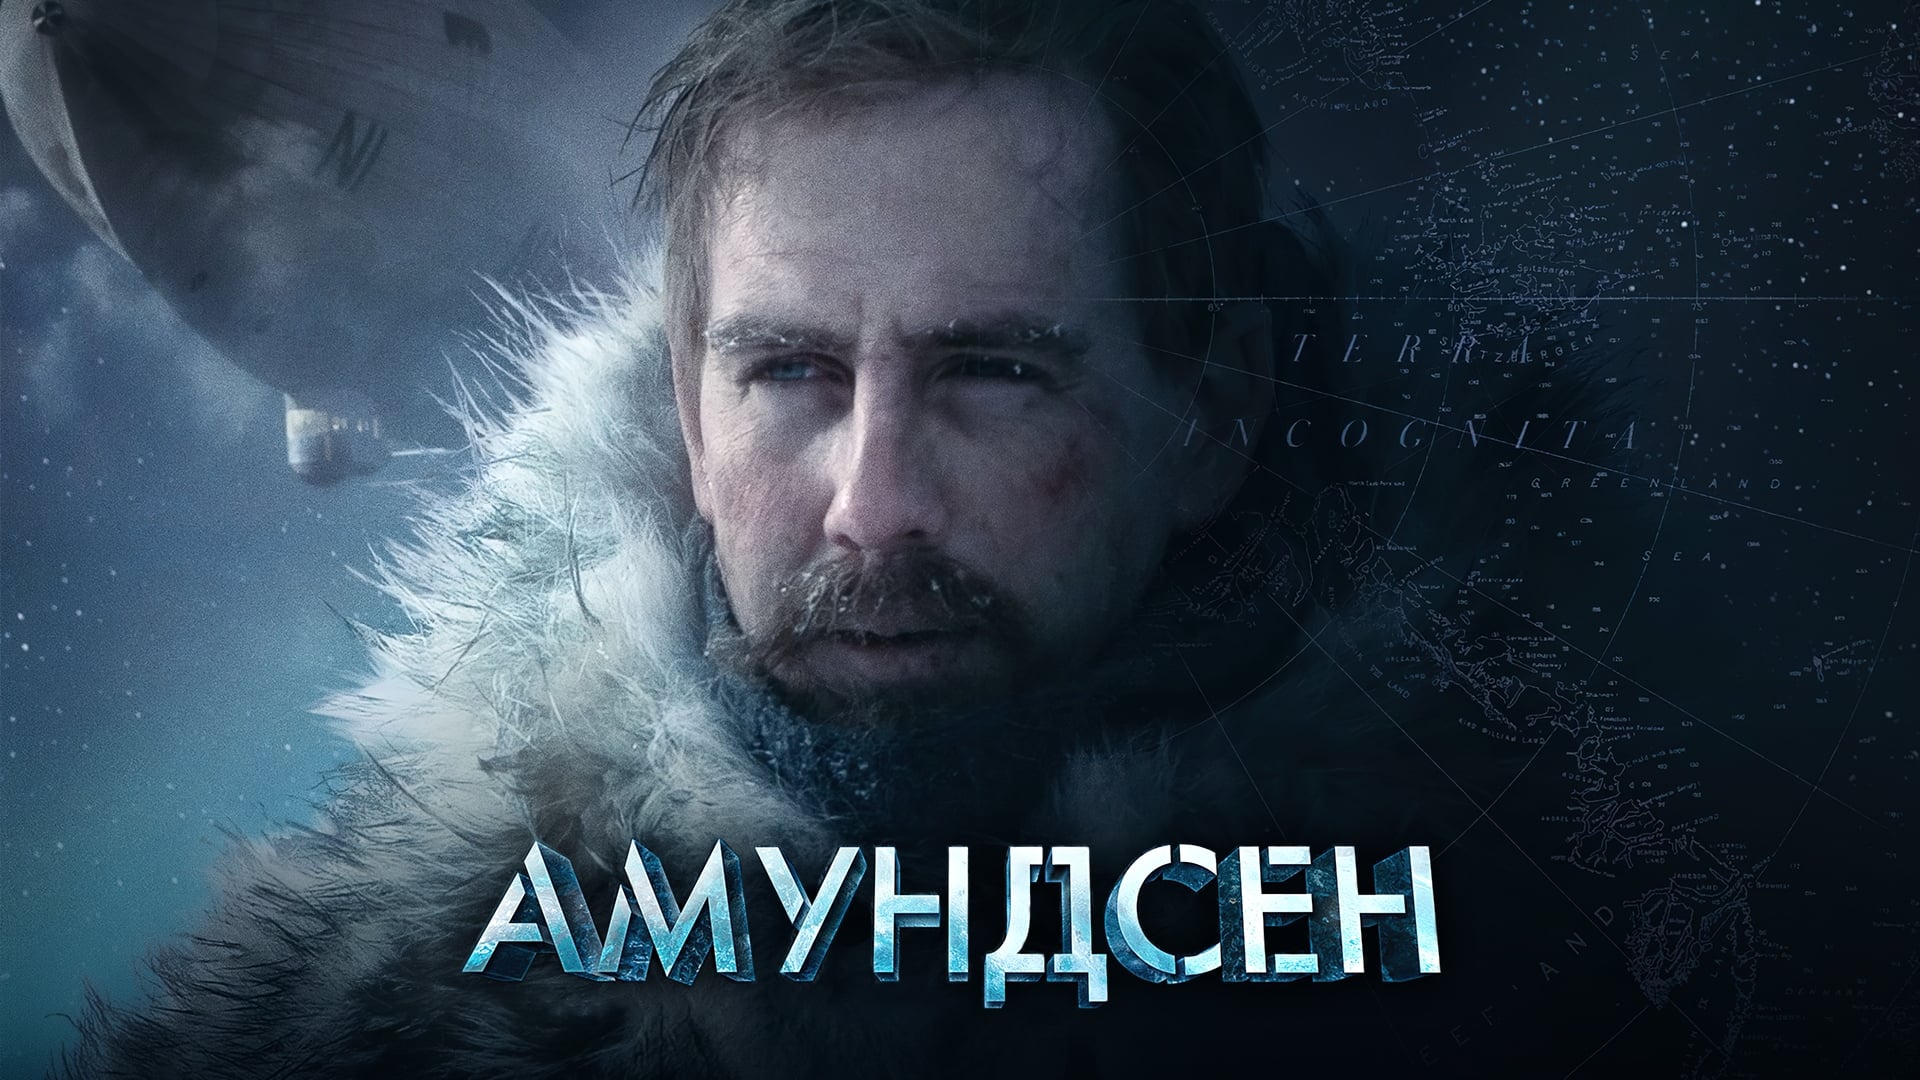 Amundsen: La Gran Expedición